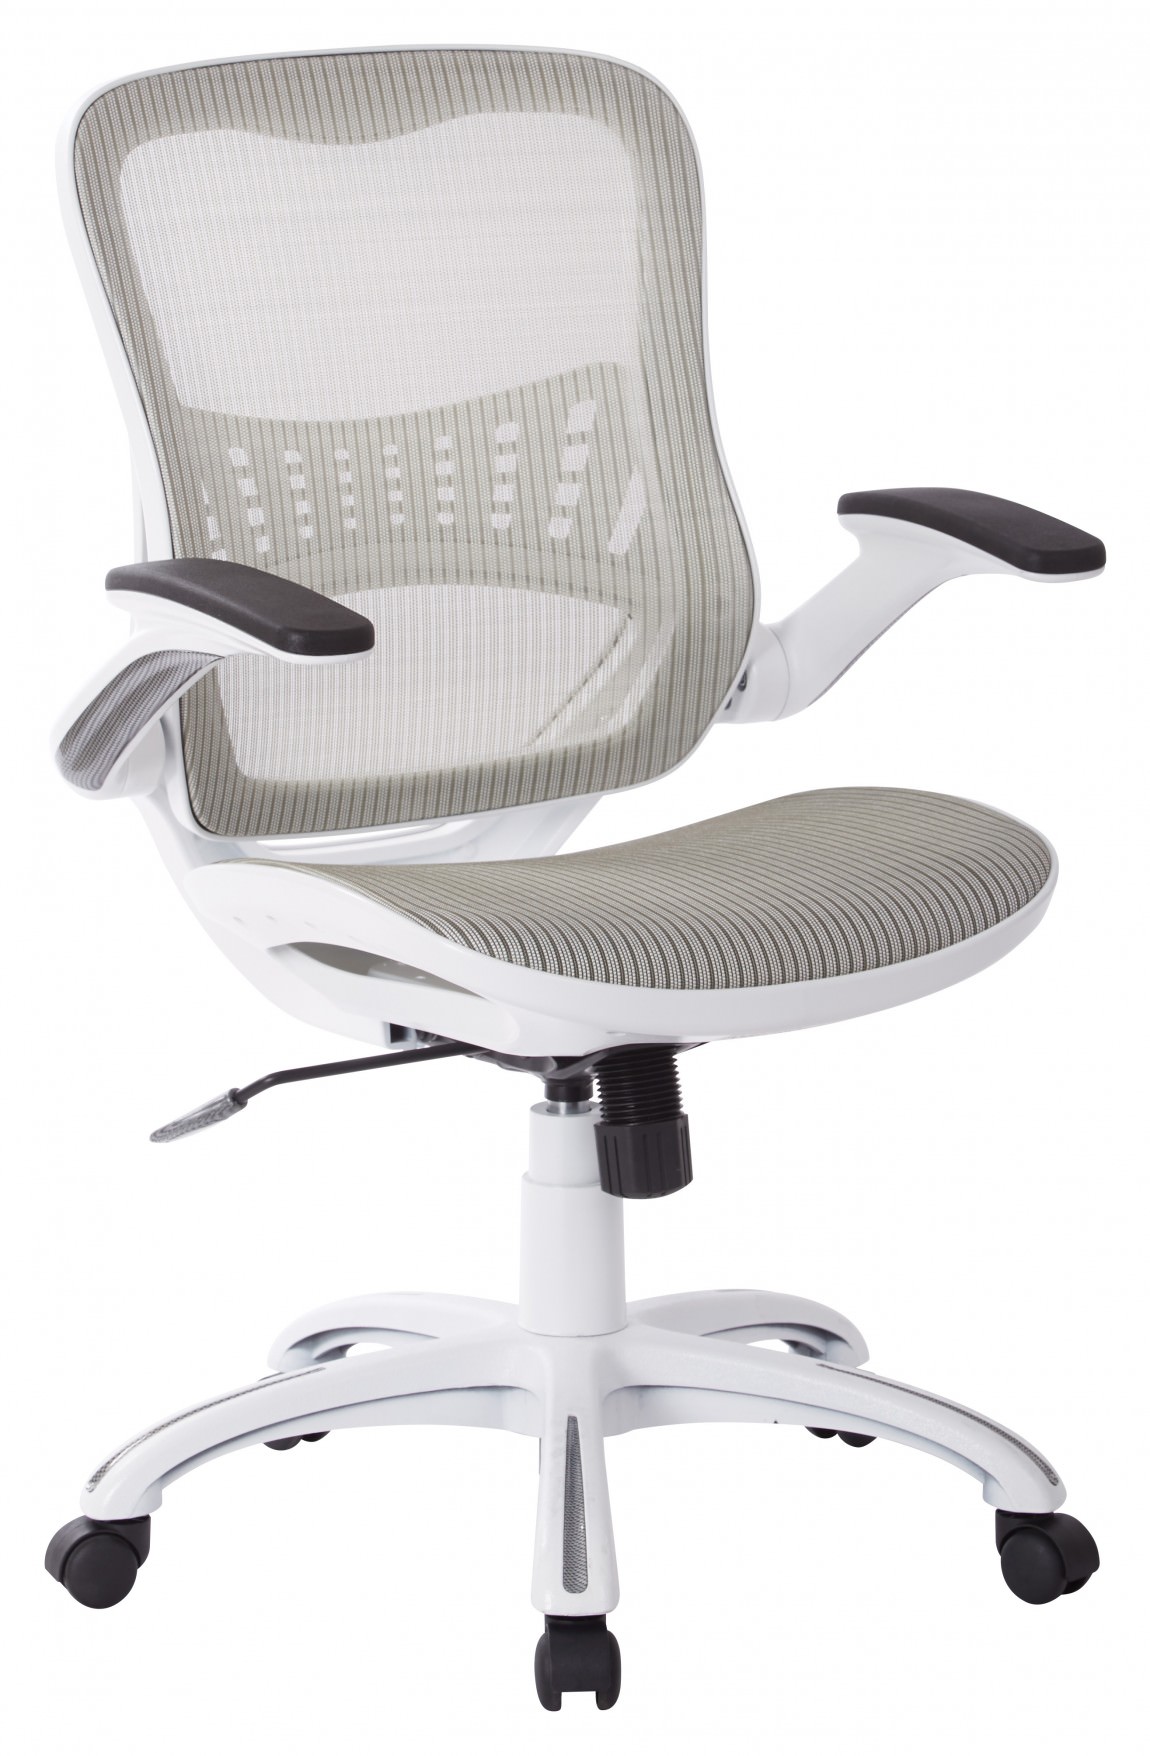 Full Mesh Office Chair